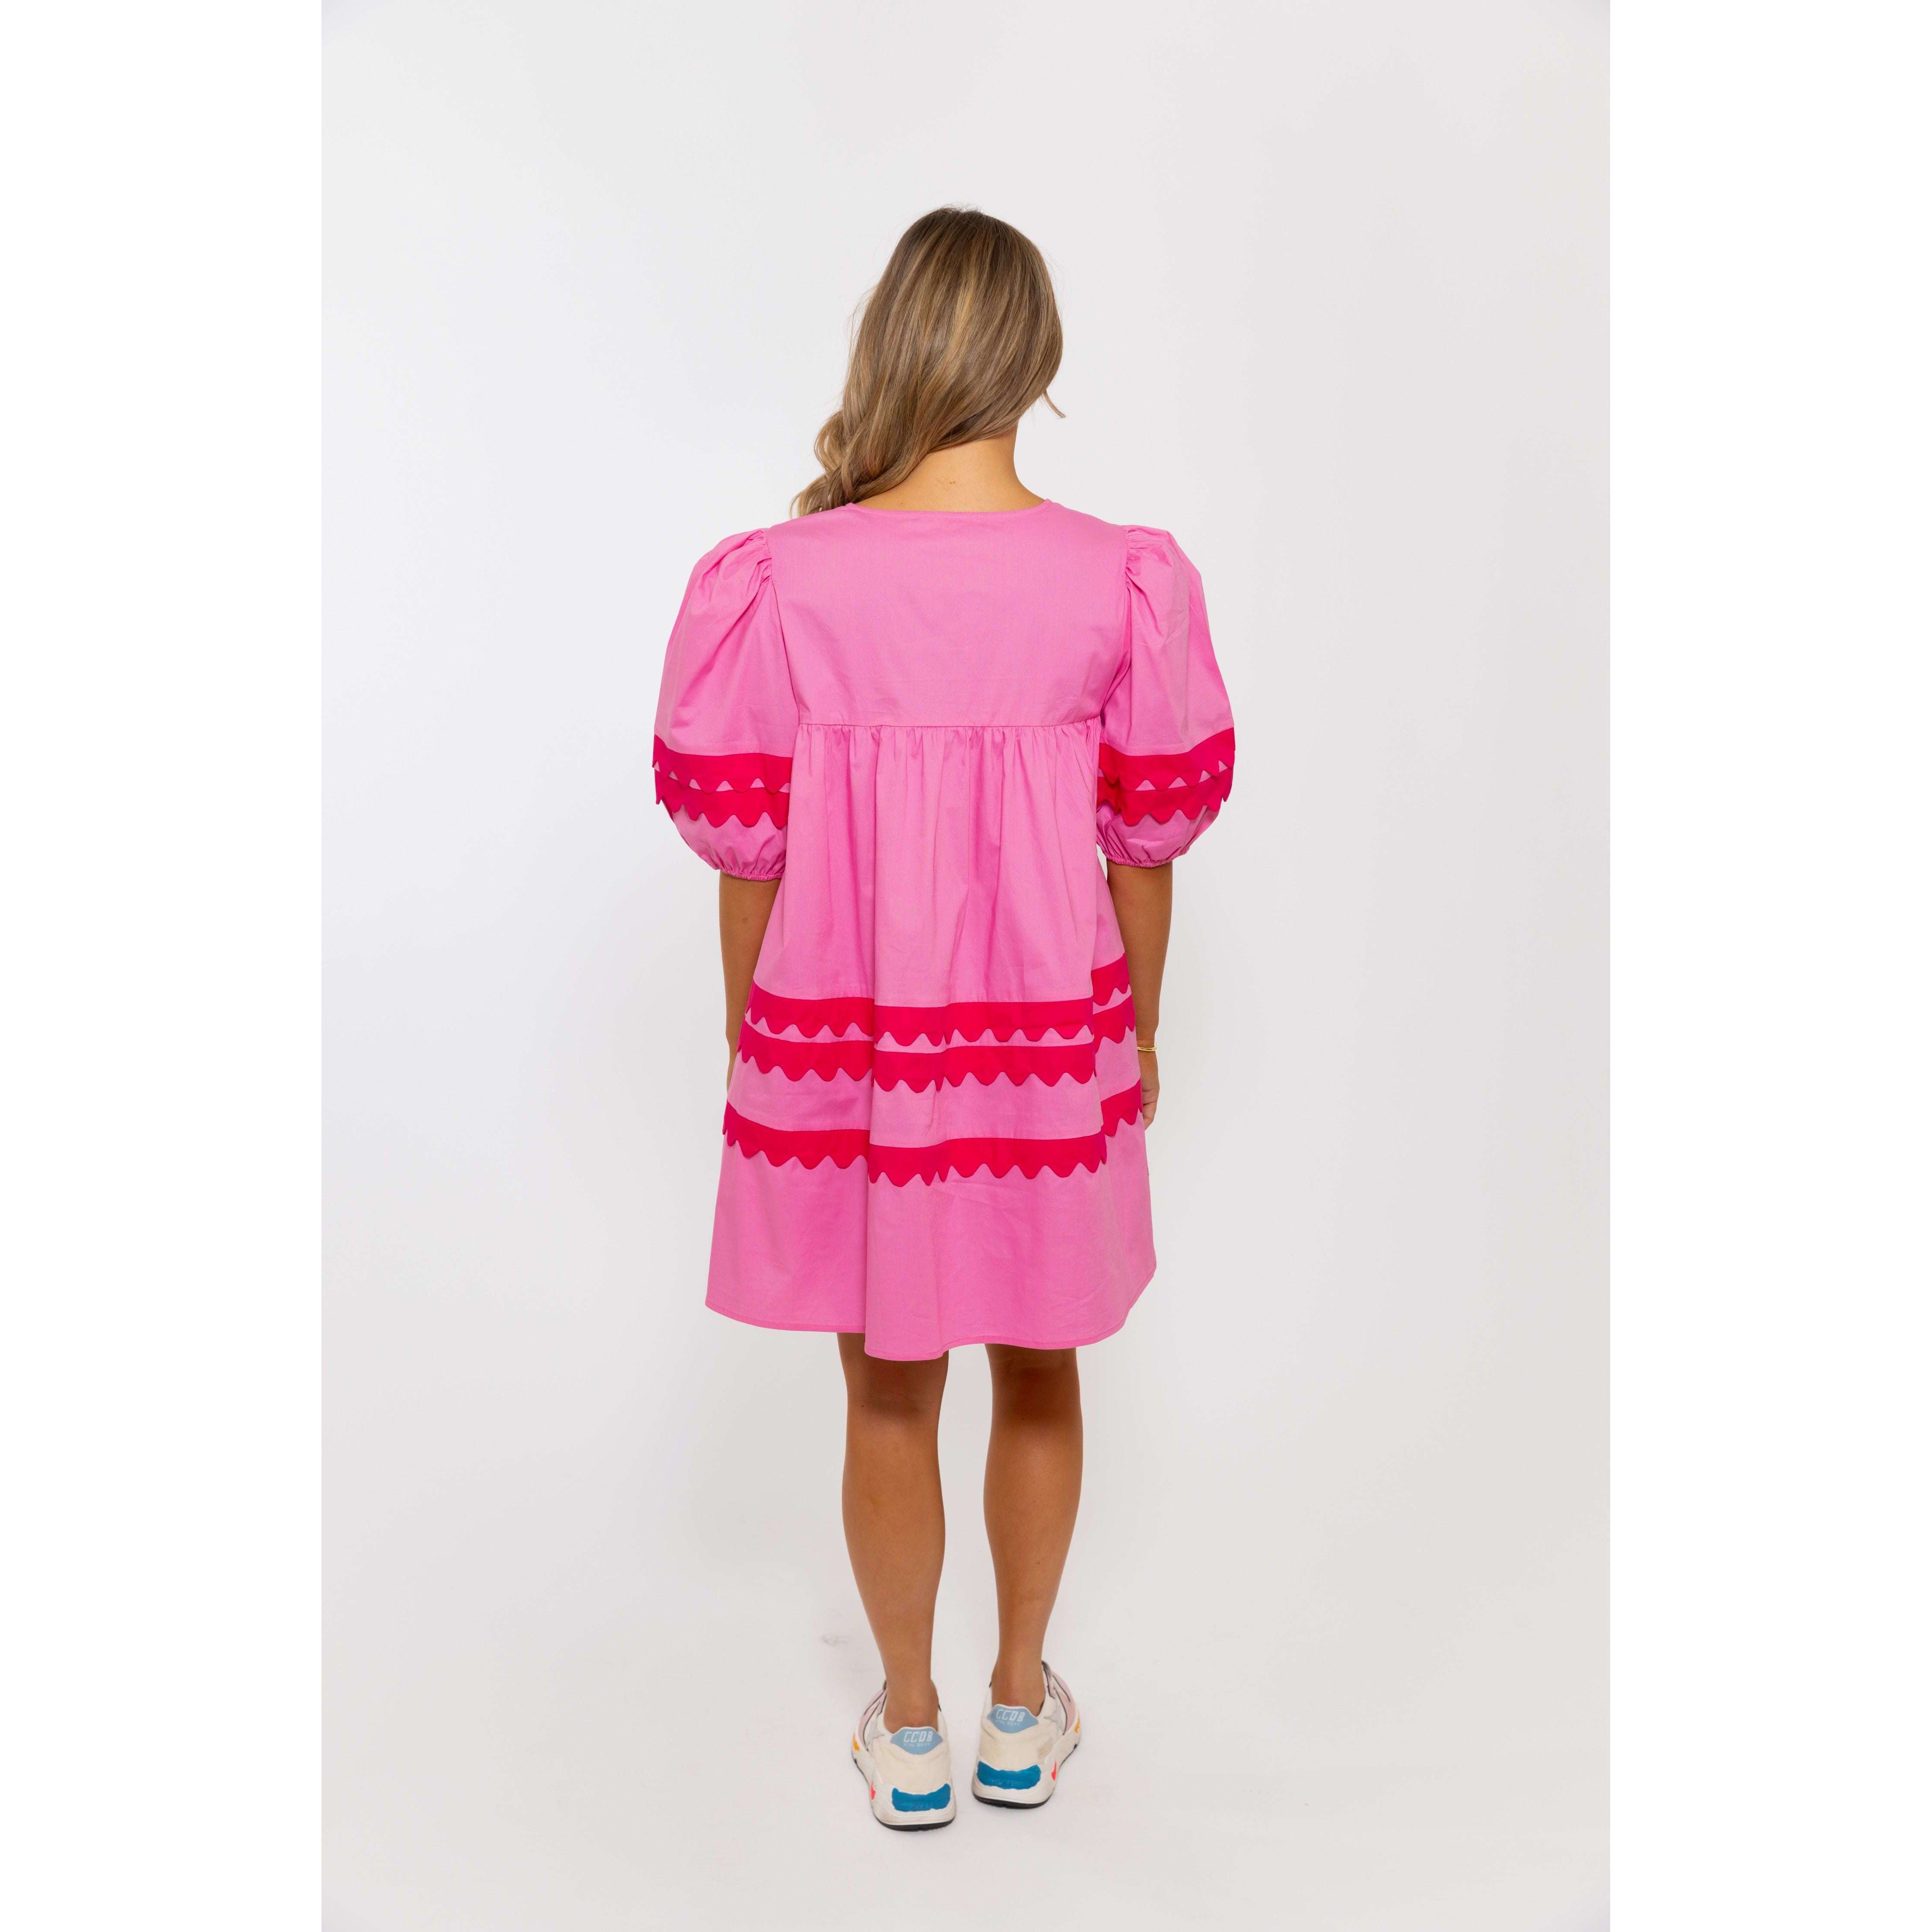 8.28 Boutique:Karlie Clothes,Karlie V-Neck Scallop Puff Sleeve Dress,Dress